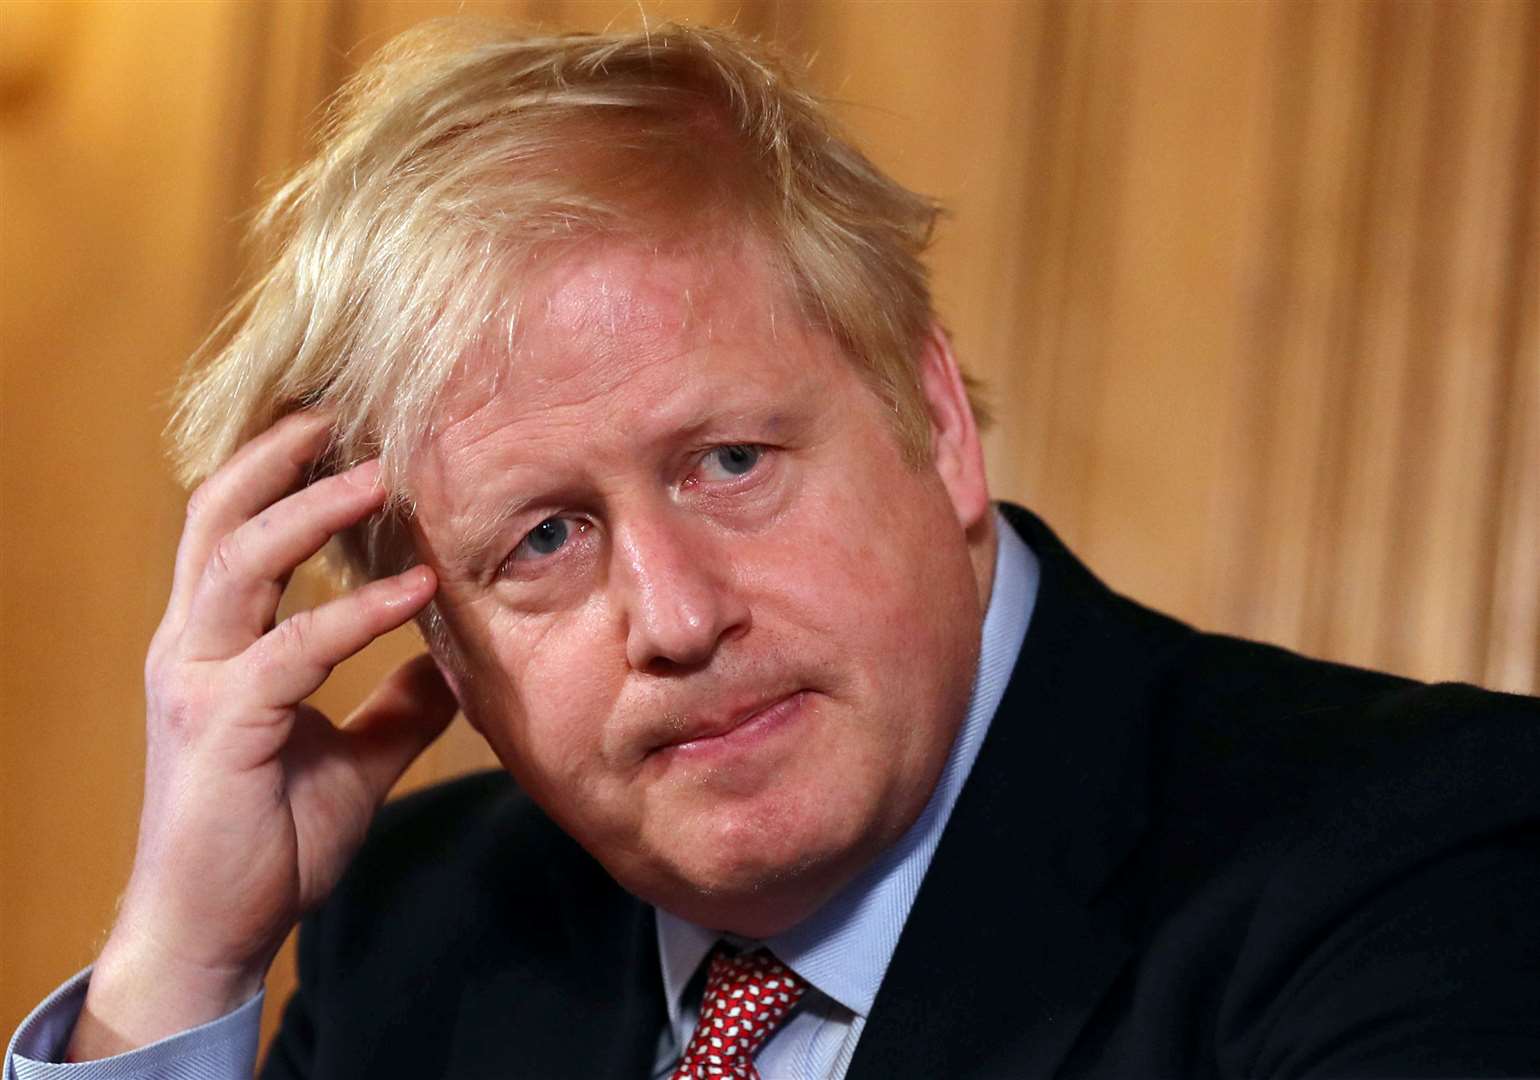 Has the shine come off Prime Minister Boris Johnson? Picture: Simon Dawson/PA Wire